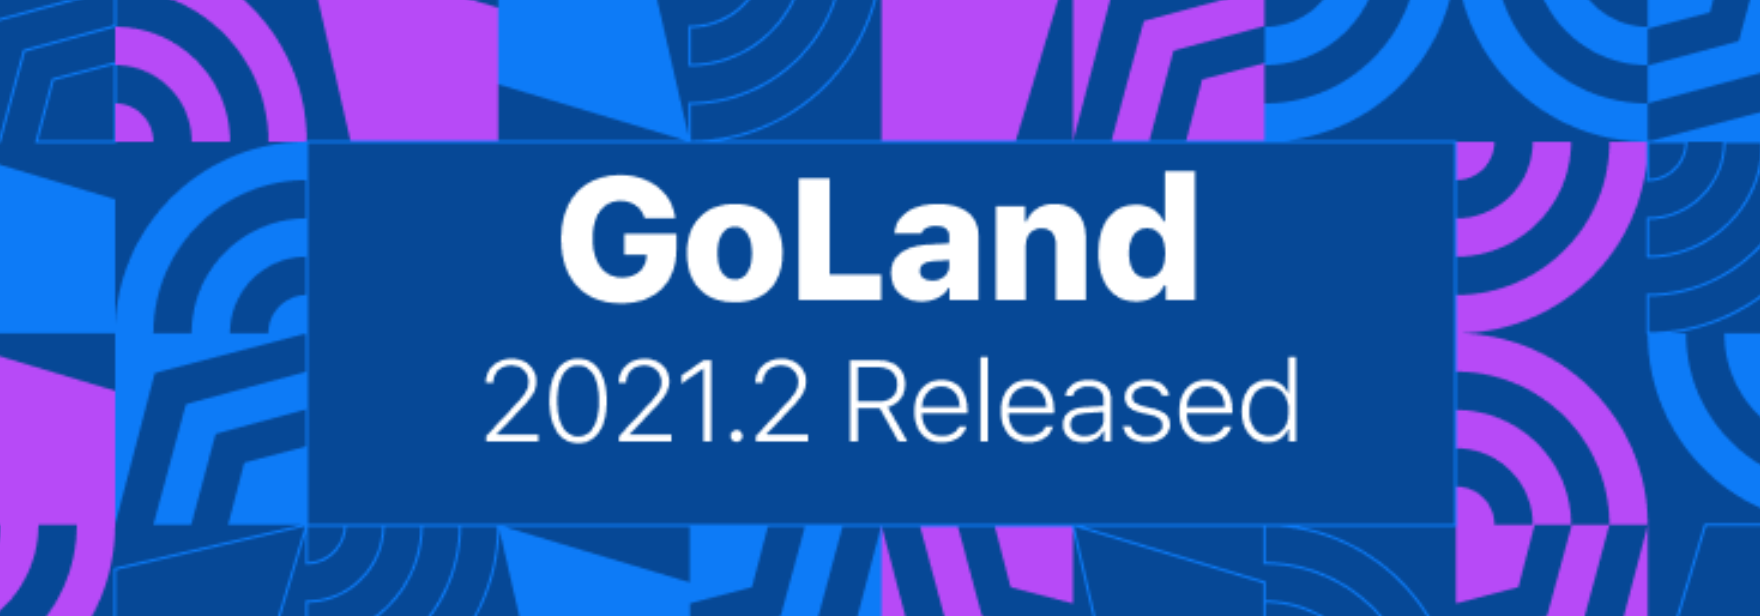 Вышла новая версия GoLand 2021.2: новые функции для модулей Go, форматирование и поддержка Go 1.17